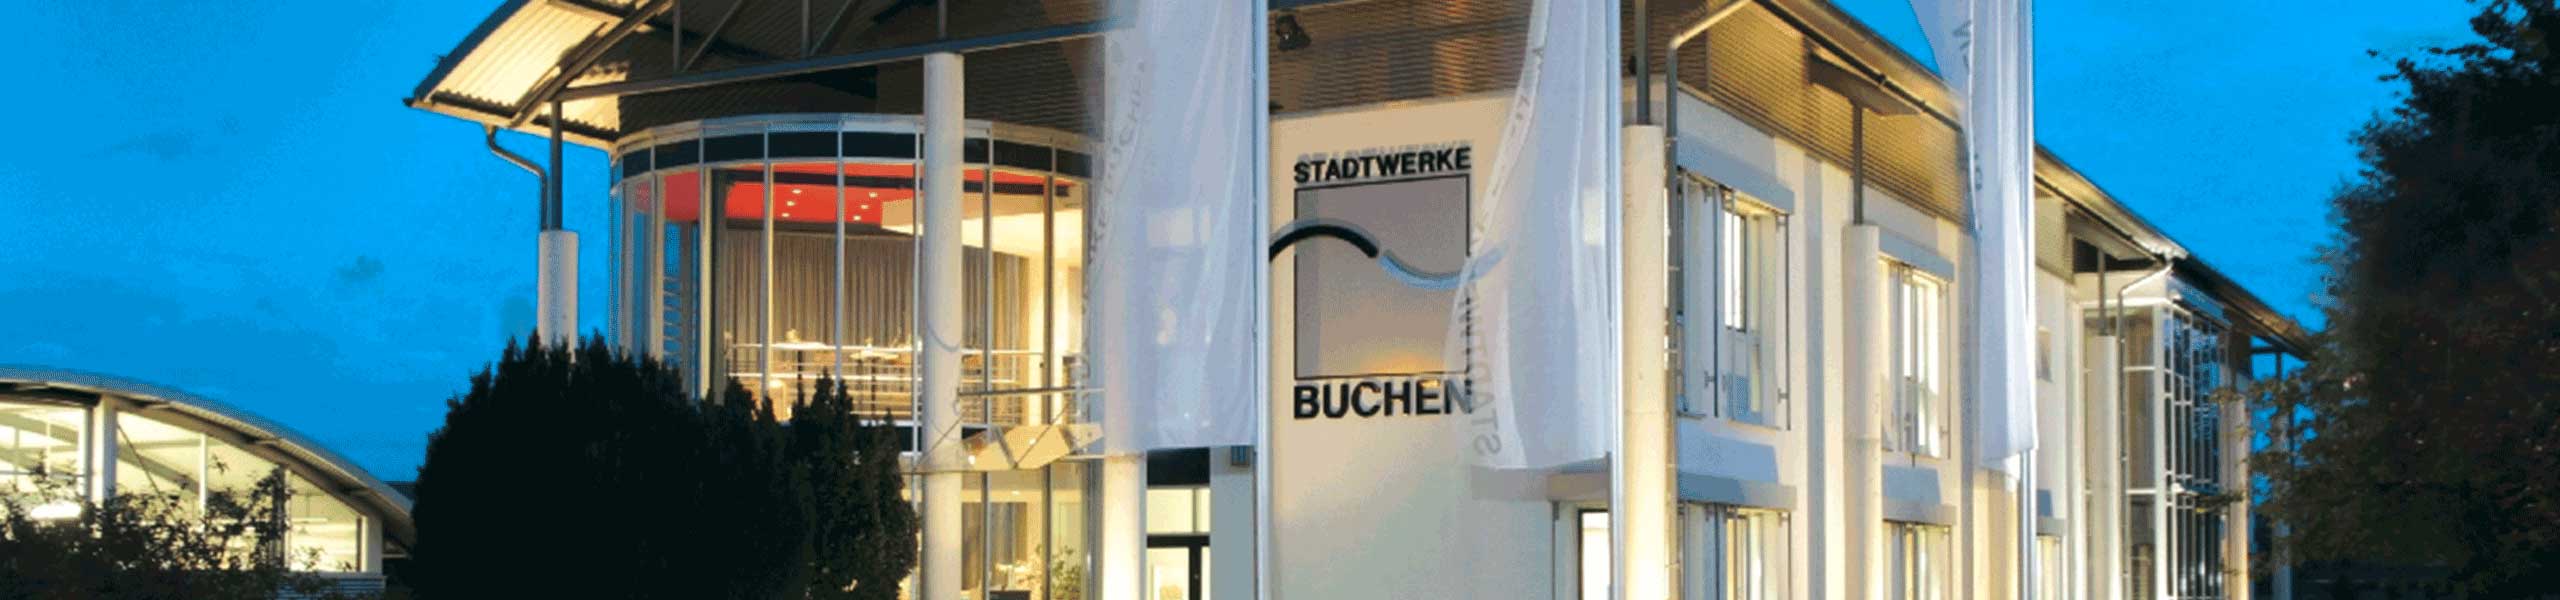 Stadtwerke Buchen GmbH & Co KG - Elektromonteur/Elektiker (m/w/d)